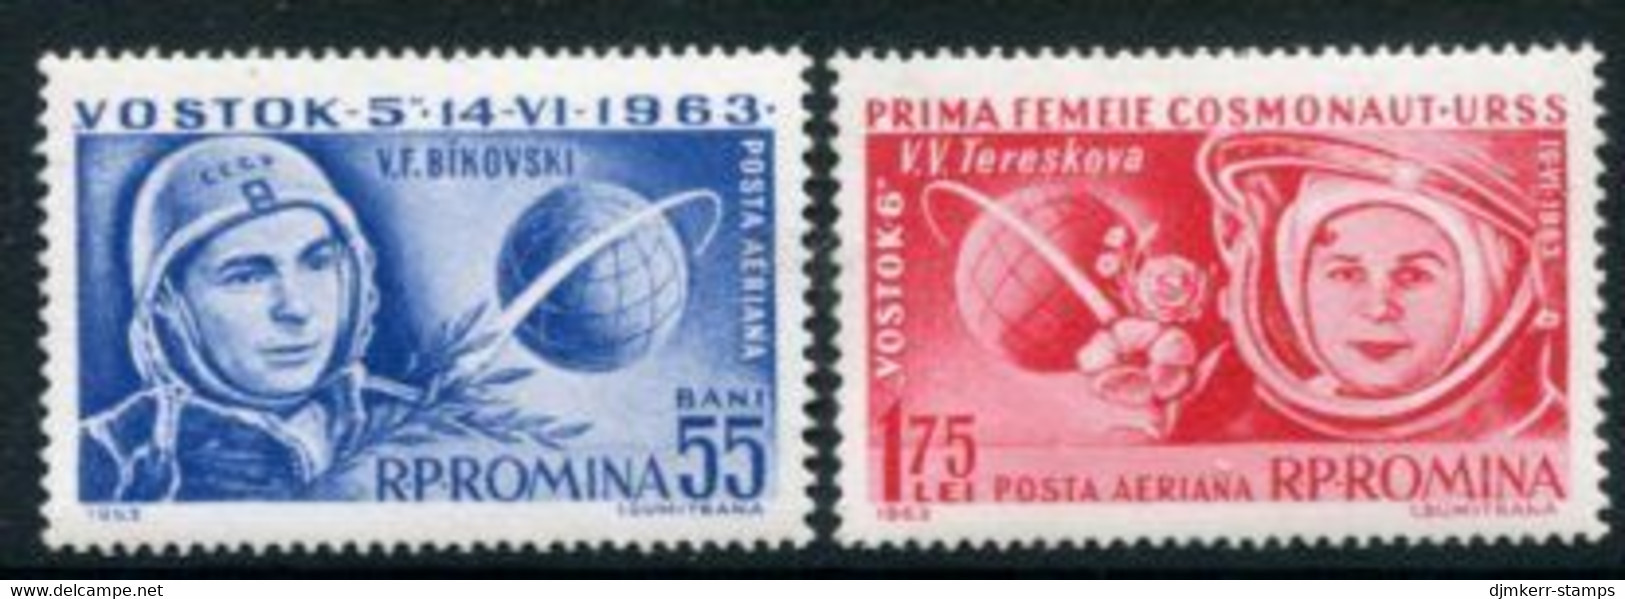 ROMANIA 1963 Vostok 5 And 6 Space Flights MNH / **.  Michel 2171-72 - Ungebraucht